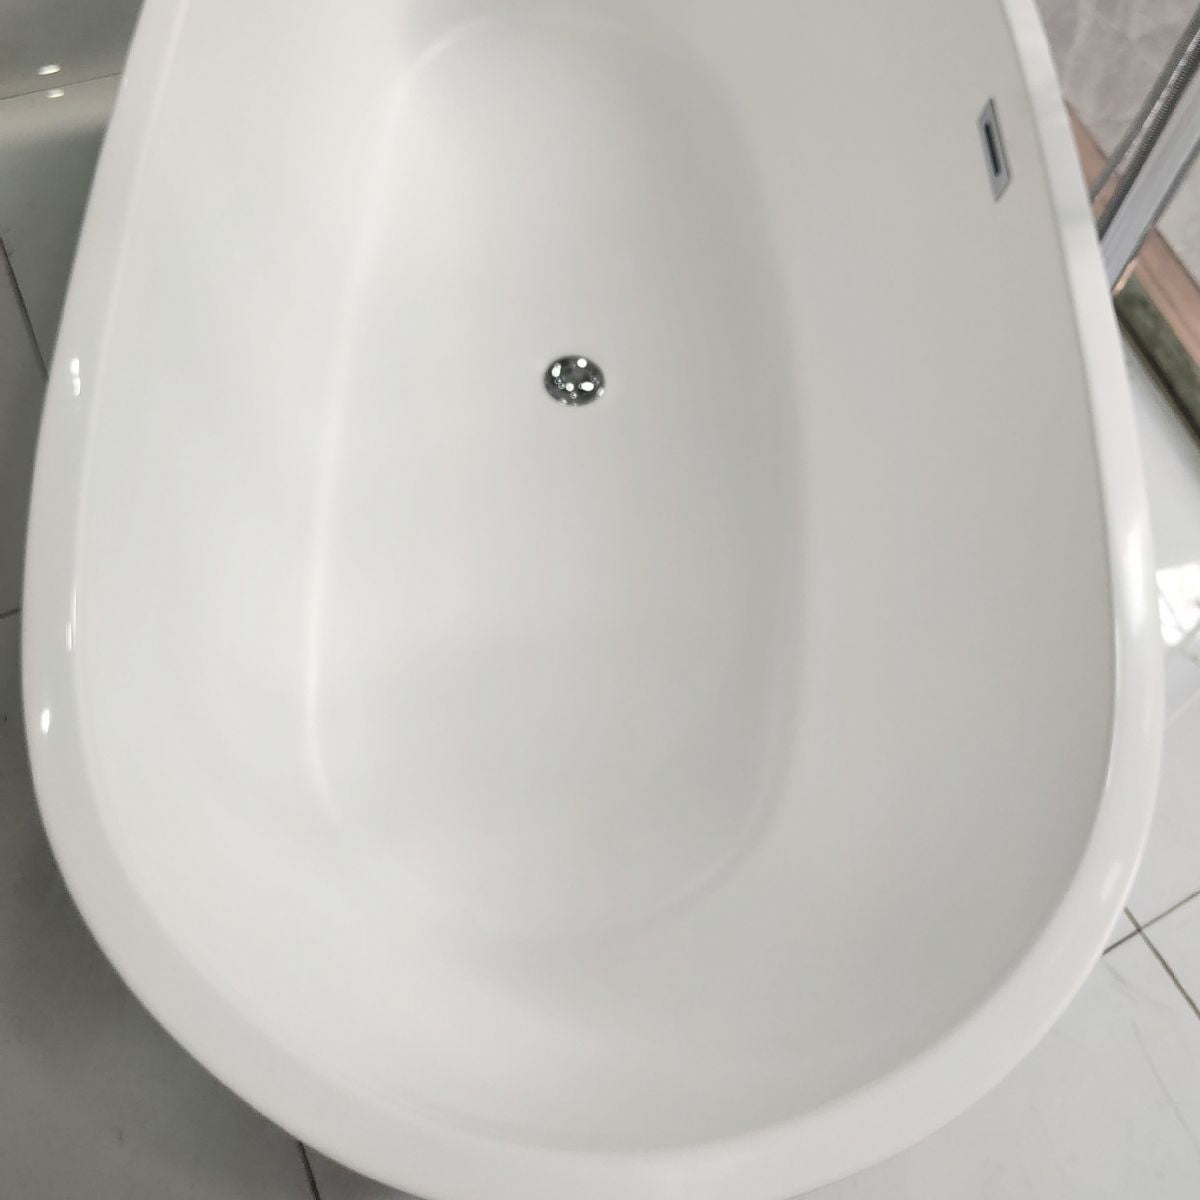 Acrylic Freestanding Soaking Bathtub Antique Finish Oval Modern Bath Tub Clearhalo 'Bathroom Remodel & Bathroom Fixtures' 'Bathtubs' 'Home Improvement' 'home_improvement' 'home_improvement_bathtubs' 'Showers & Bathtubs' 1200x1200_ca516312-ab46-466b-b08c-d71167362262